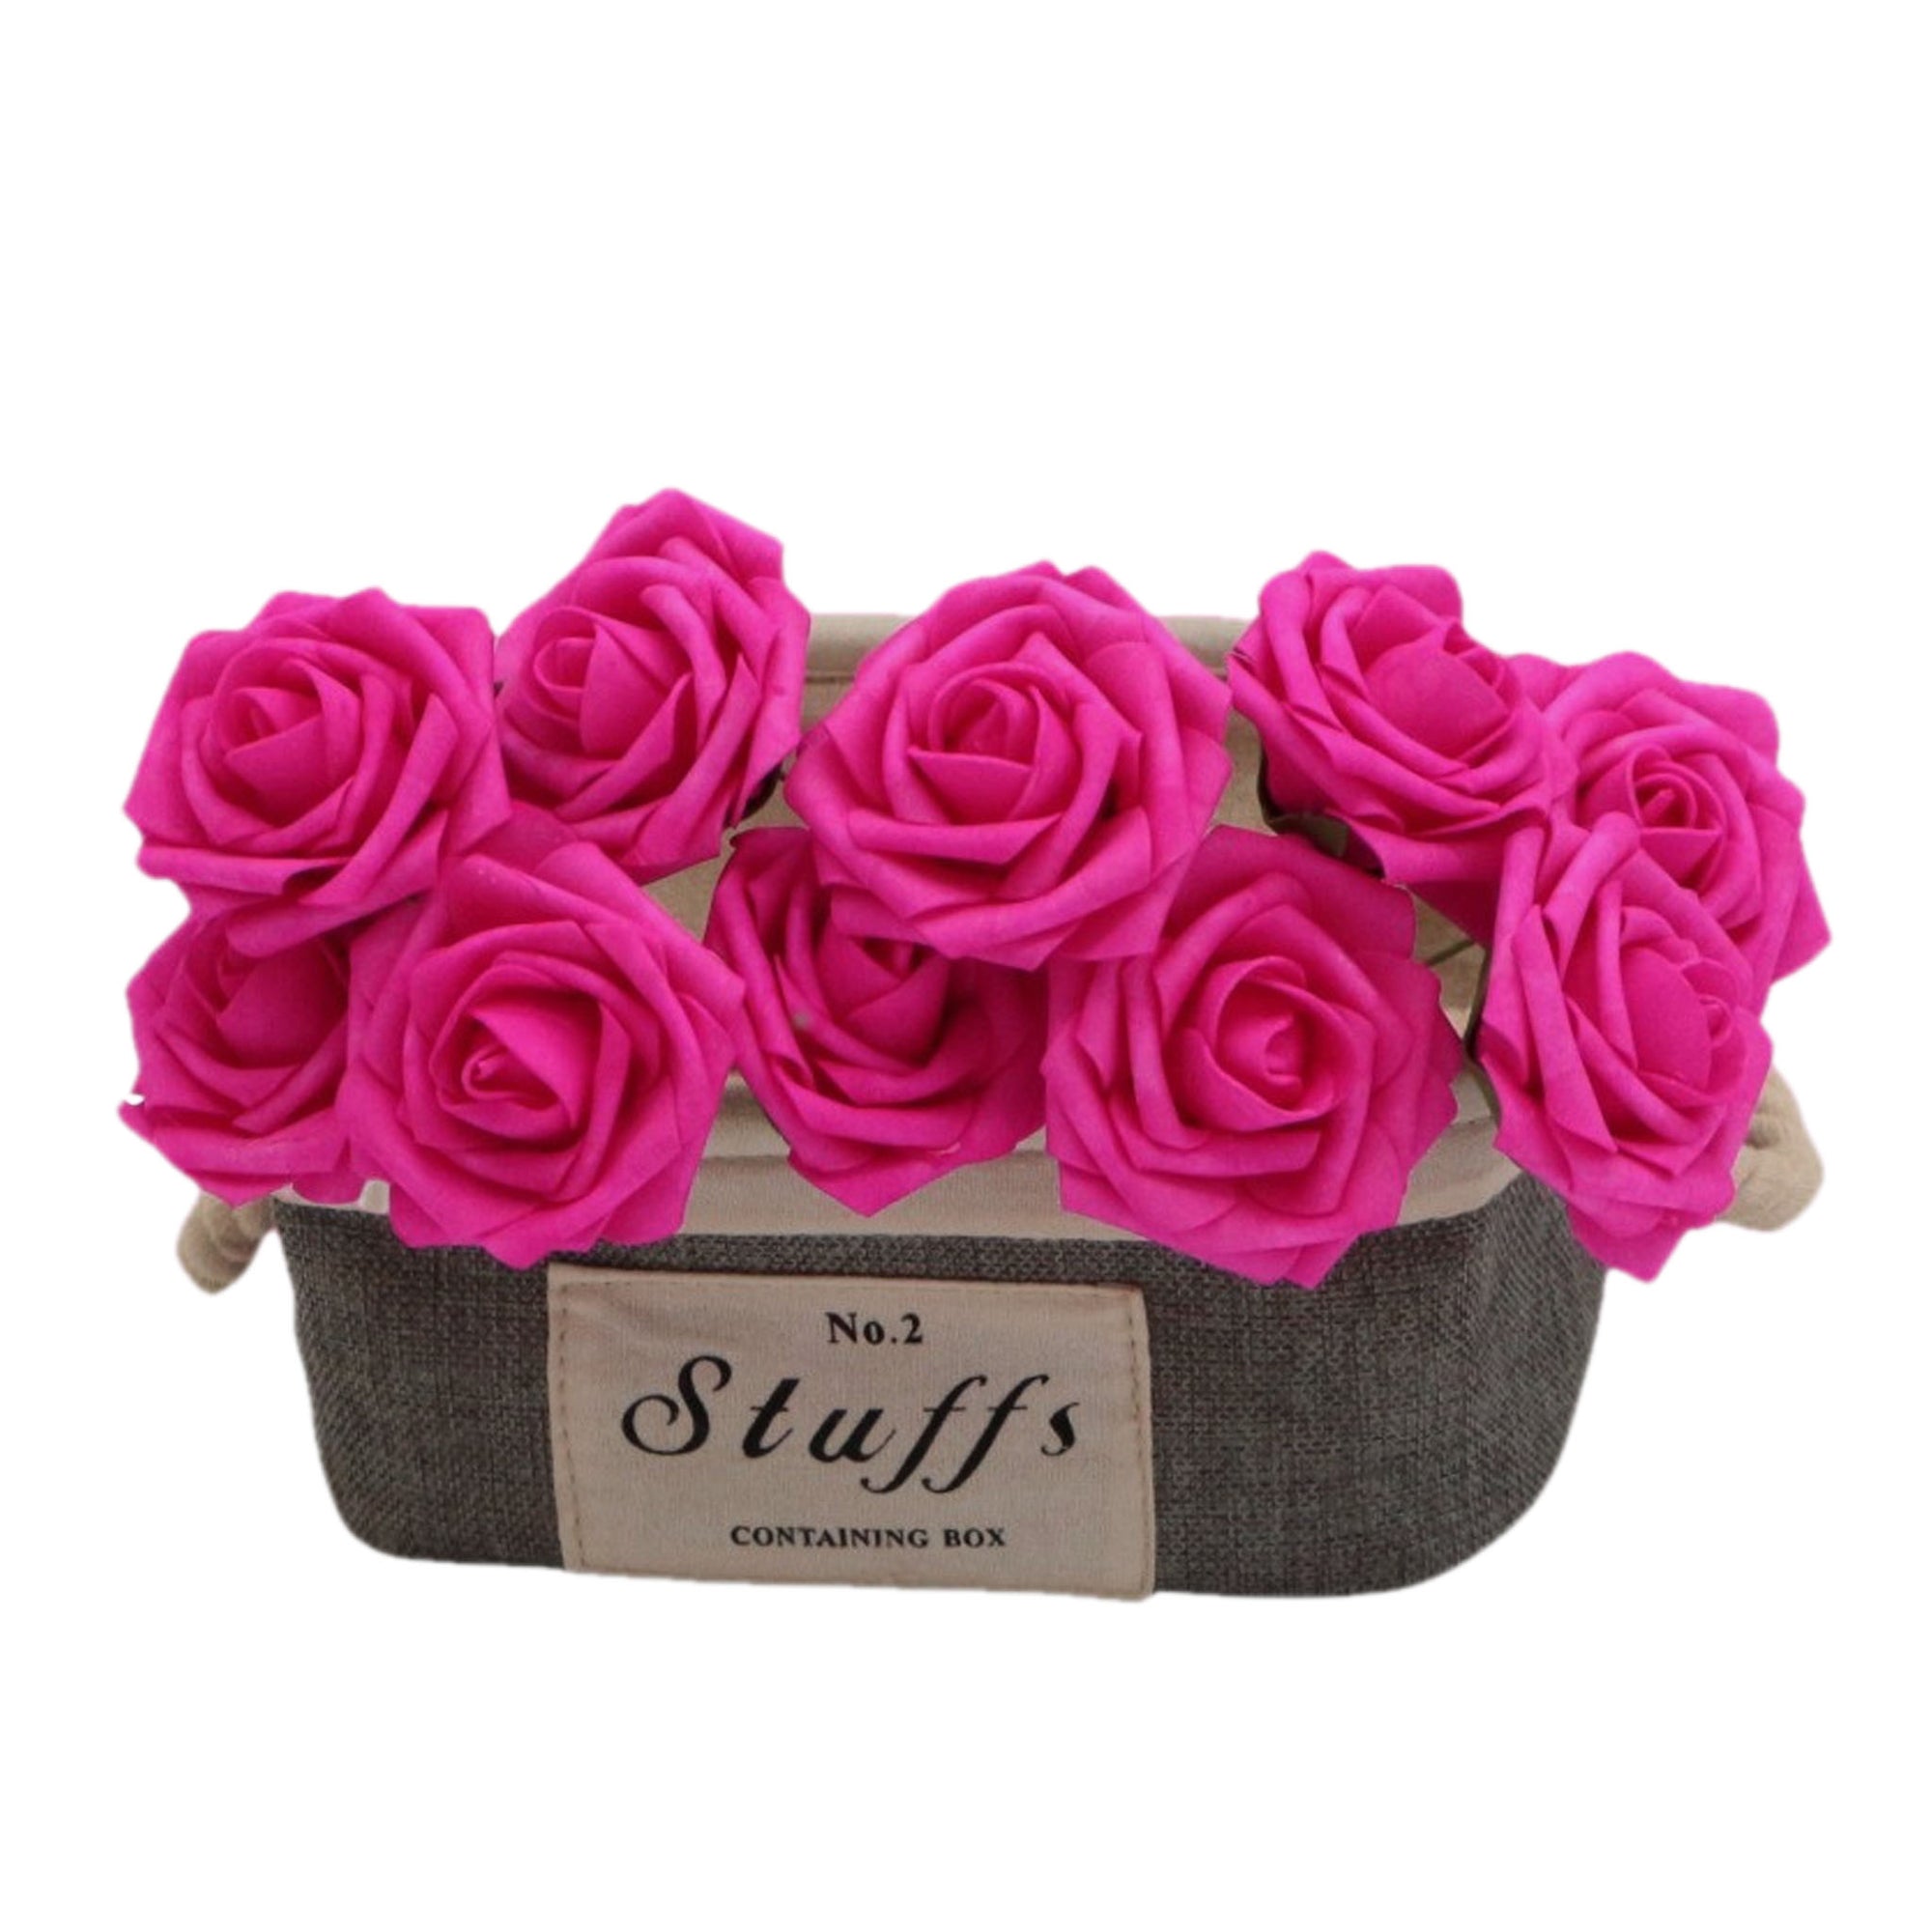 Hot Pink Wedding Flowers Bulk Roses for Flower Balls